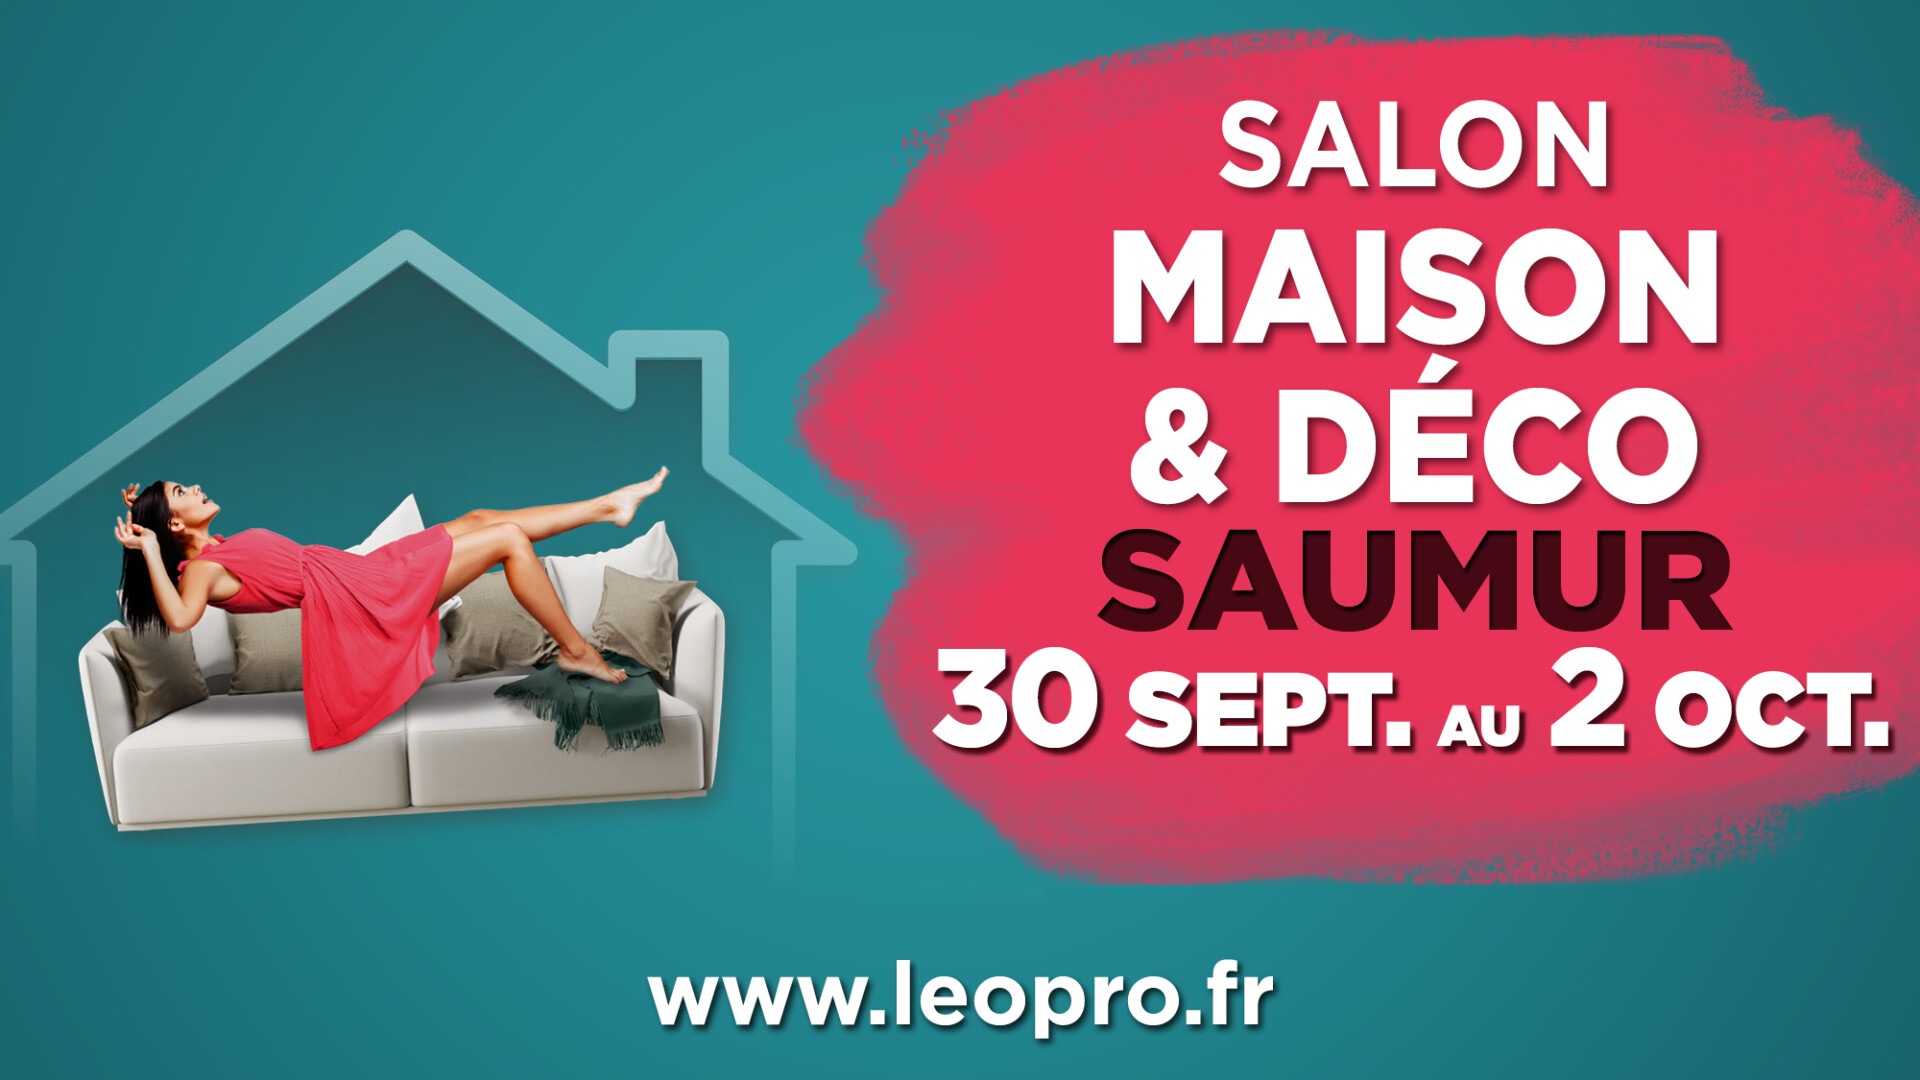 Leguay Mm RENOVATION DE SALLE DE BAIN SAUMUR Bandeau Facebook Salon Maison Deco Saumur 2022